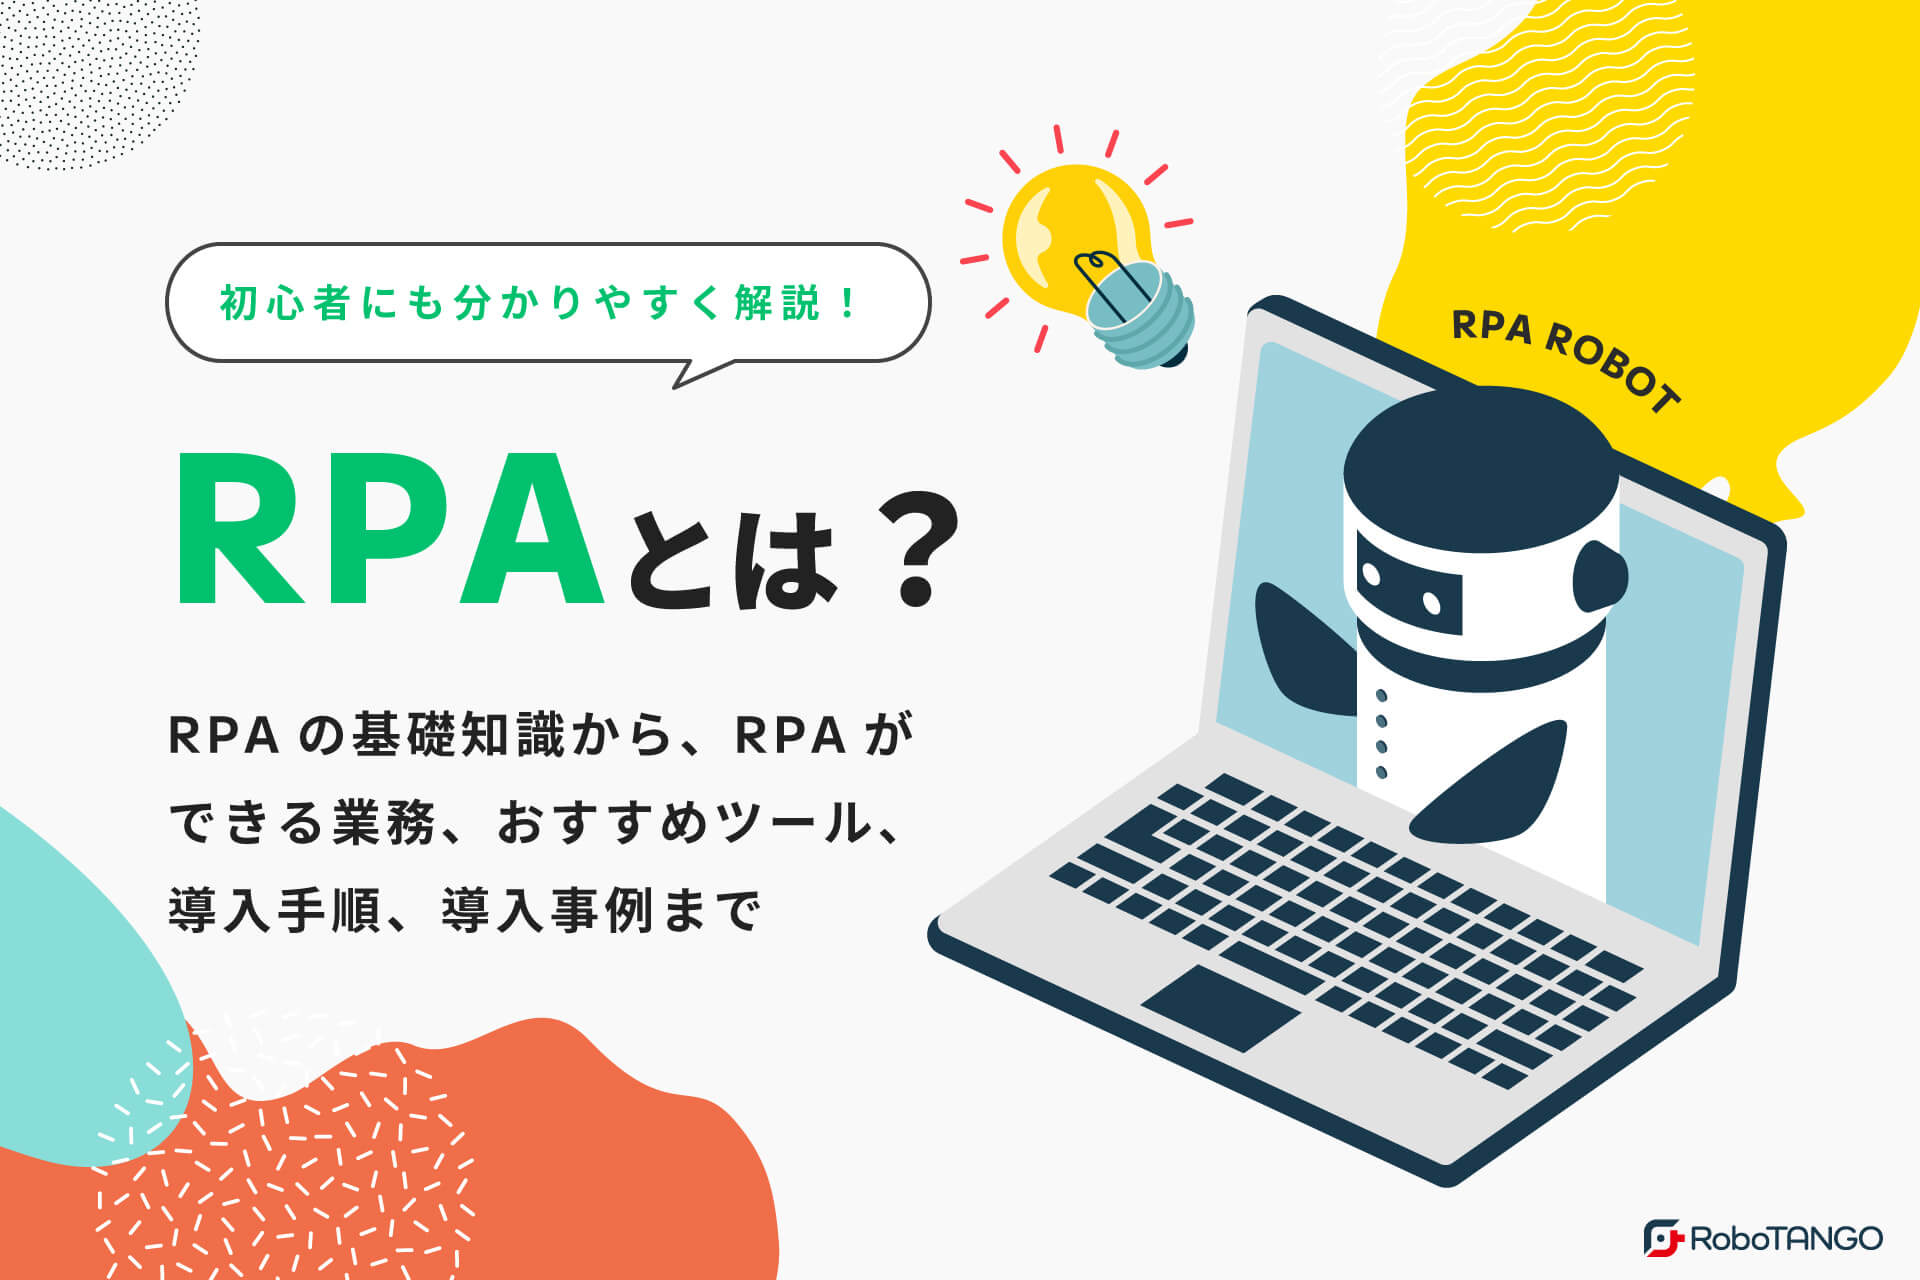 RPAとは？RPAの基礎知識からできること、メリット・デメリット、RPAおすすめツール、導入手順、事例など初心者にも分かりやすく解説